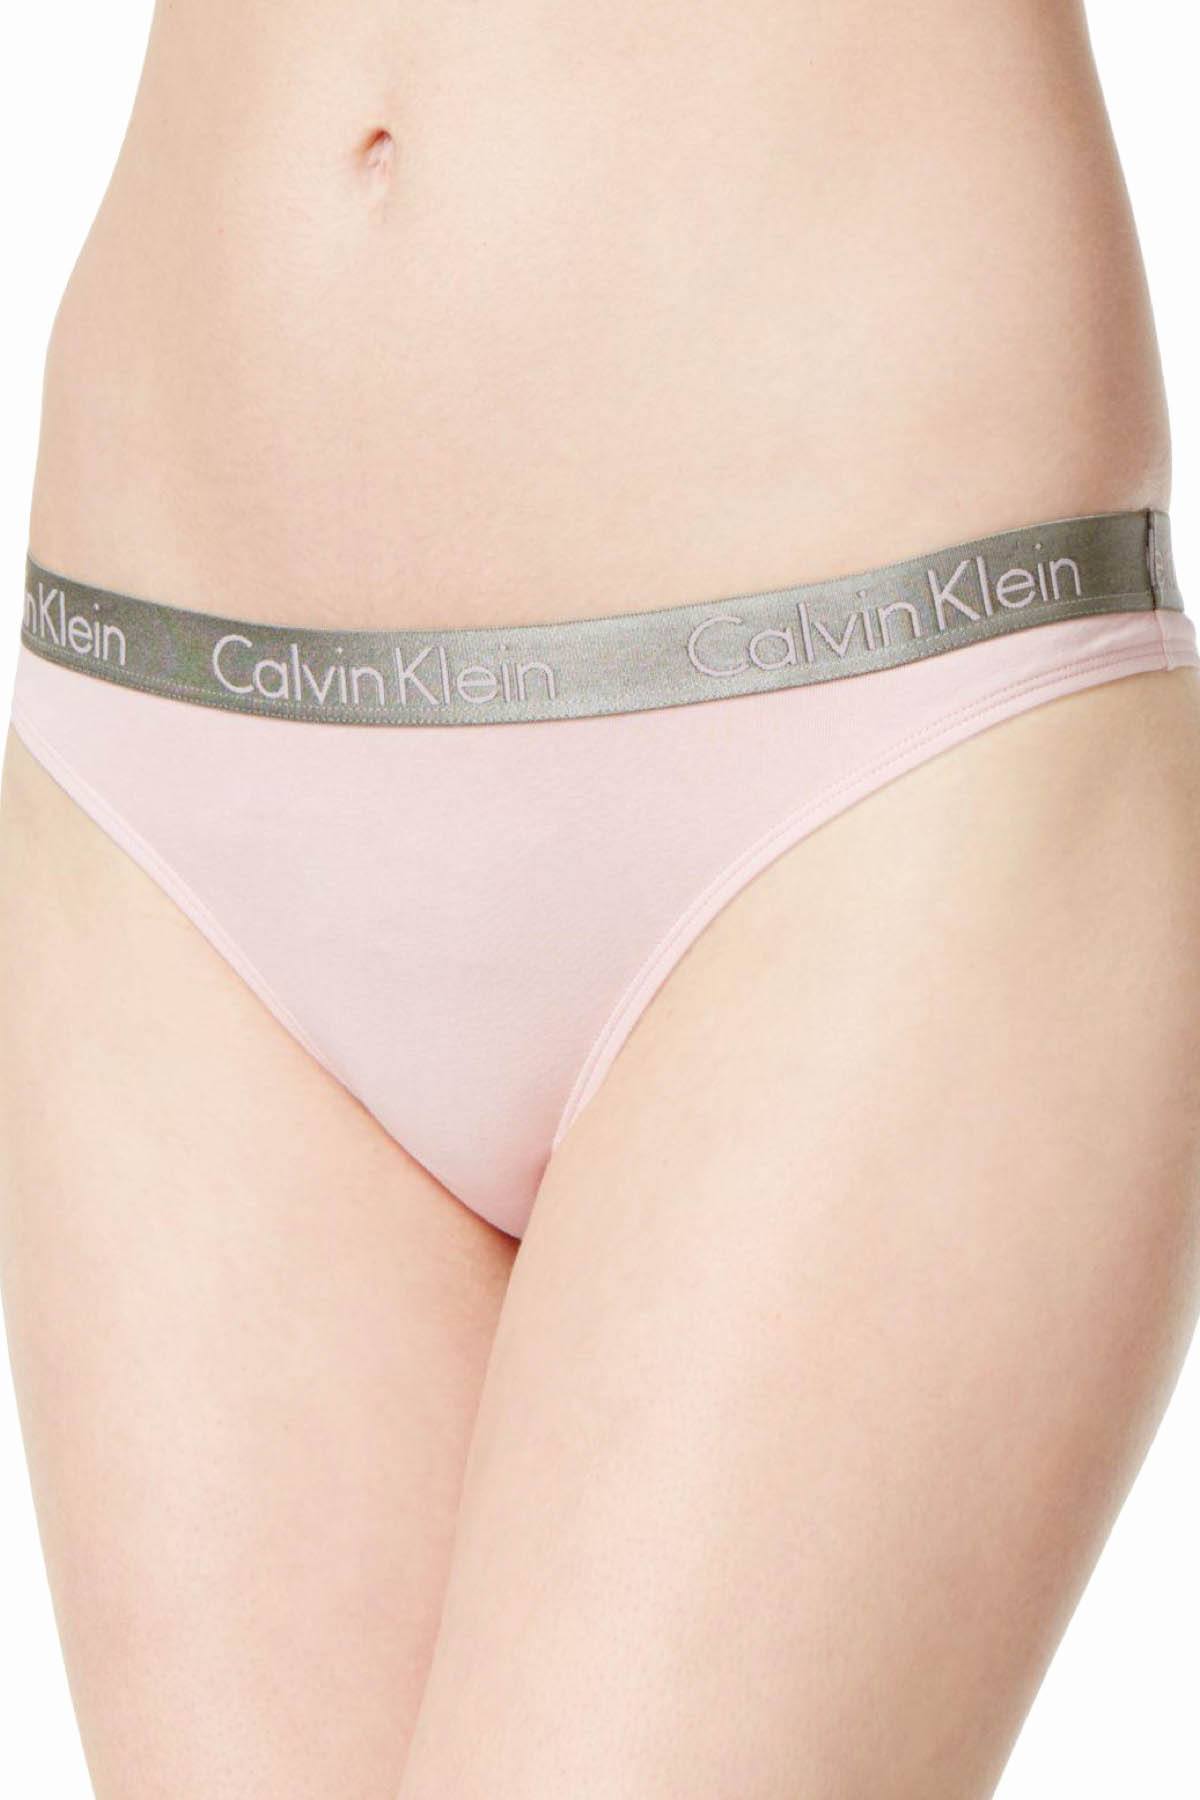 Calvin Klein Undone-Pink Radiant Cotton Thong